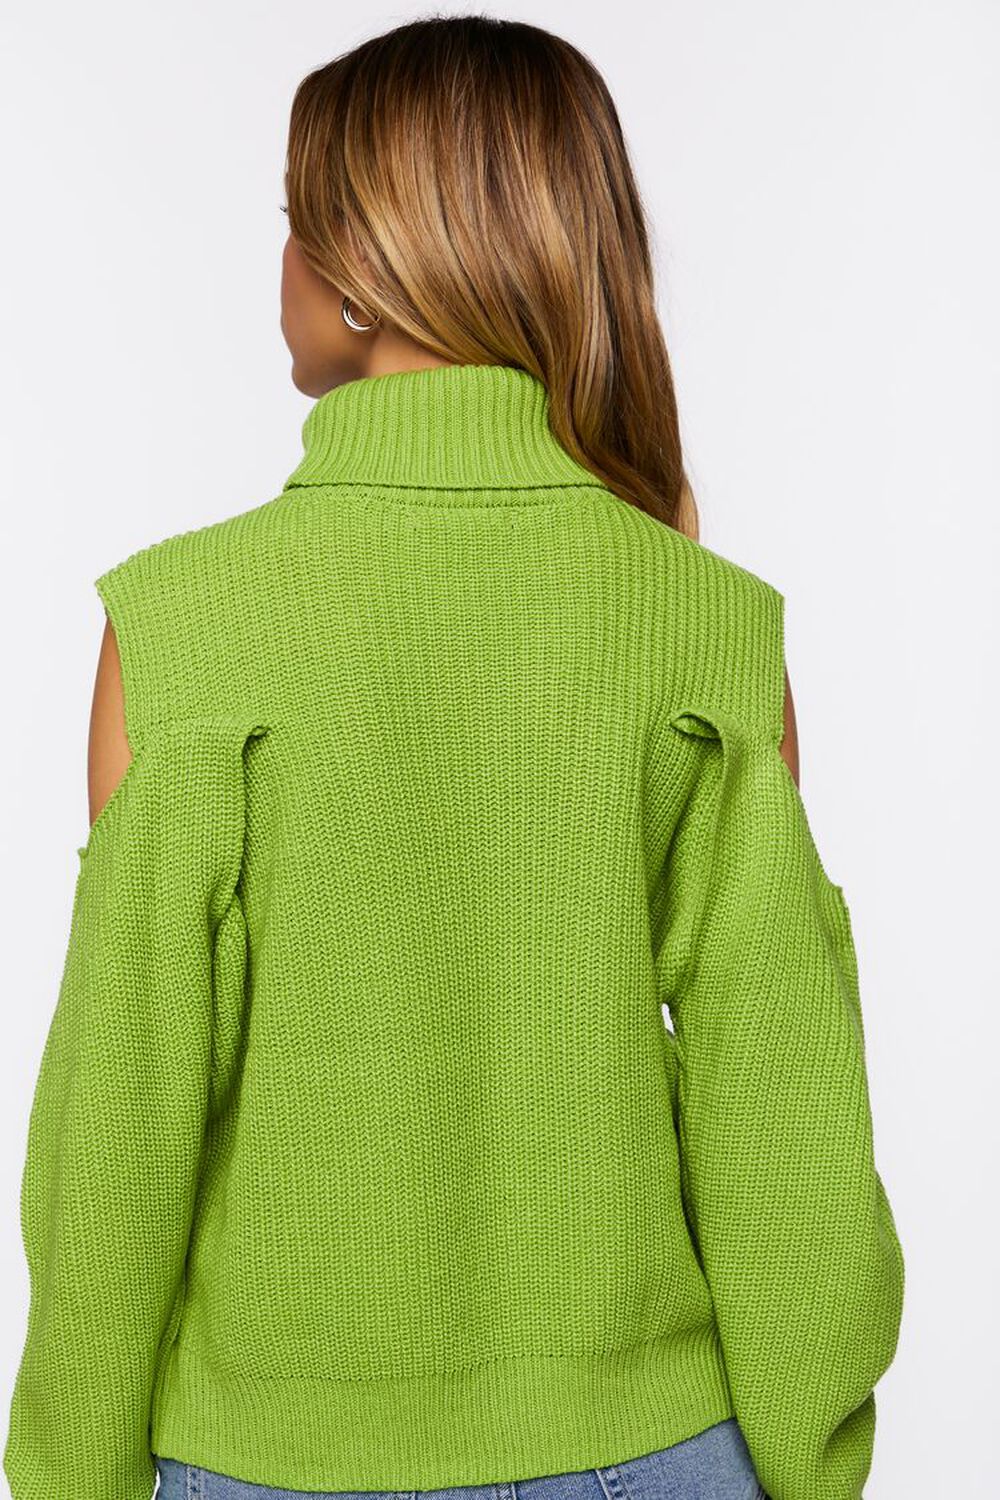 GREEN Open-Shoulder Turtleneck Sweater, image 3